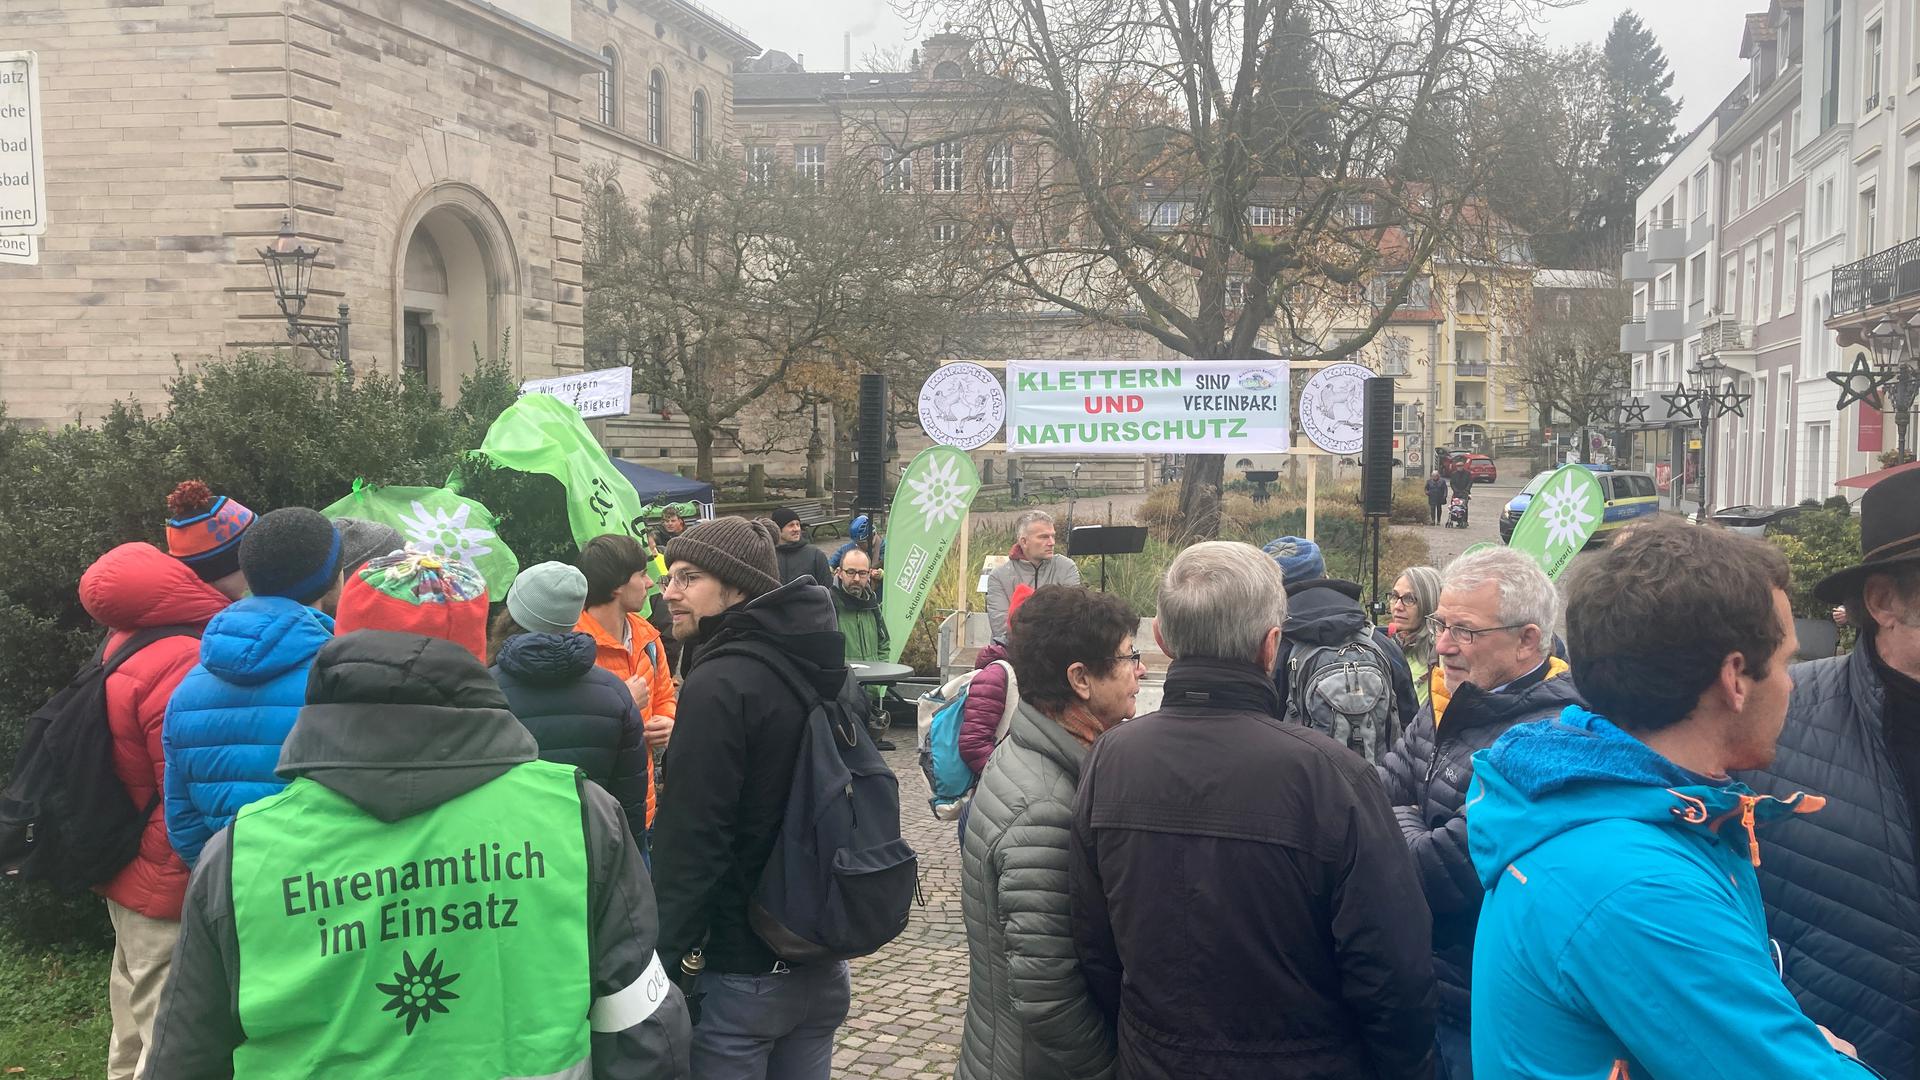 Protest in Baden-Baden gegen Kletterverbot.